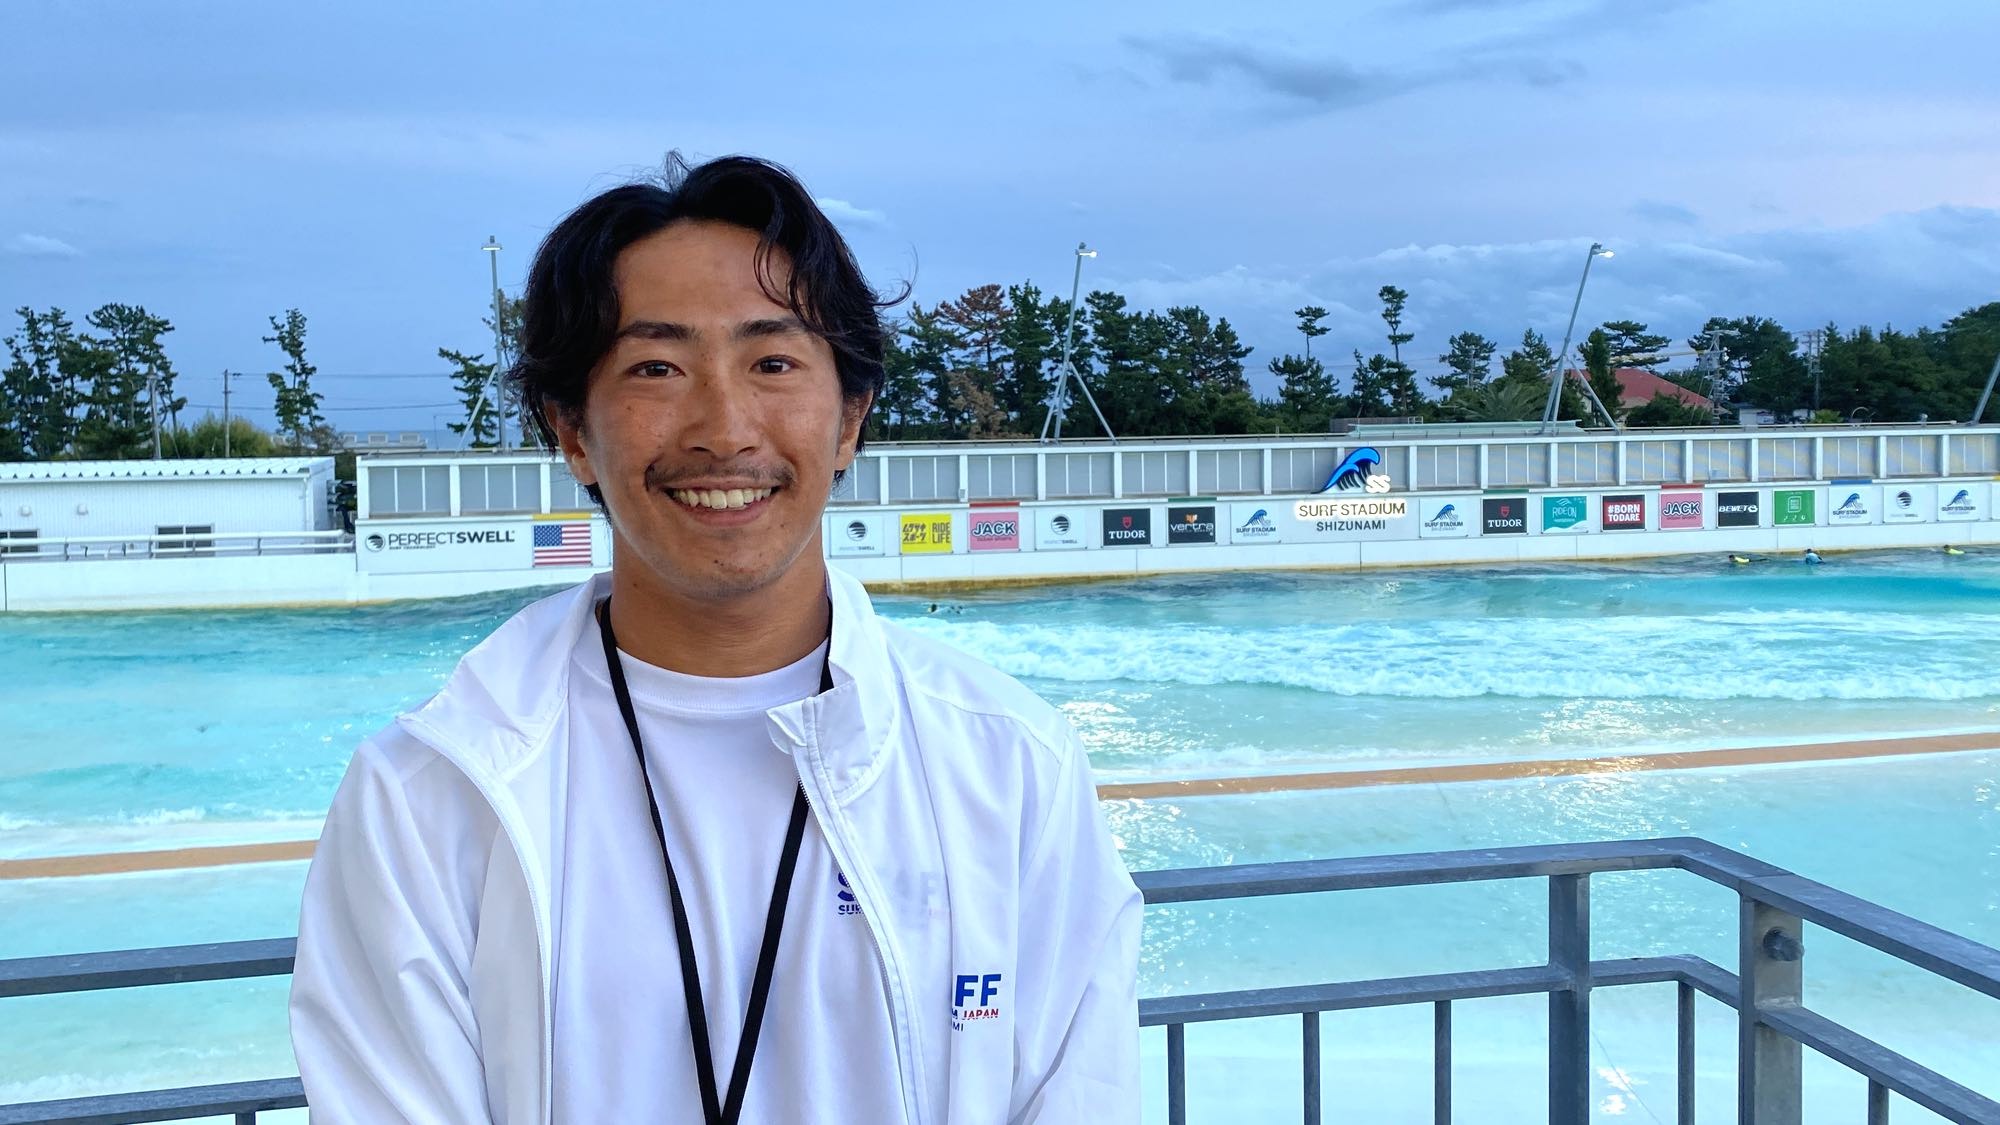 George Mori of Surf Stadium Japan